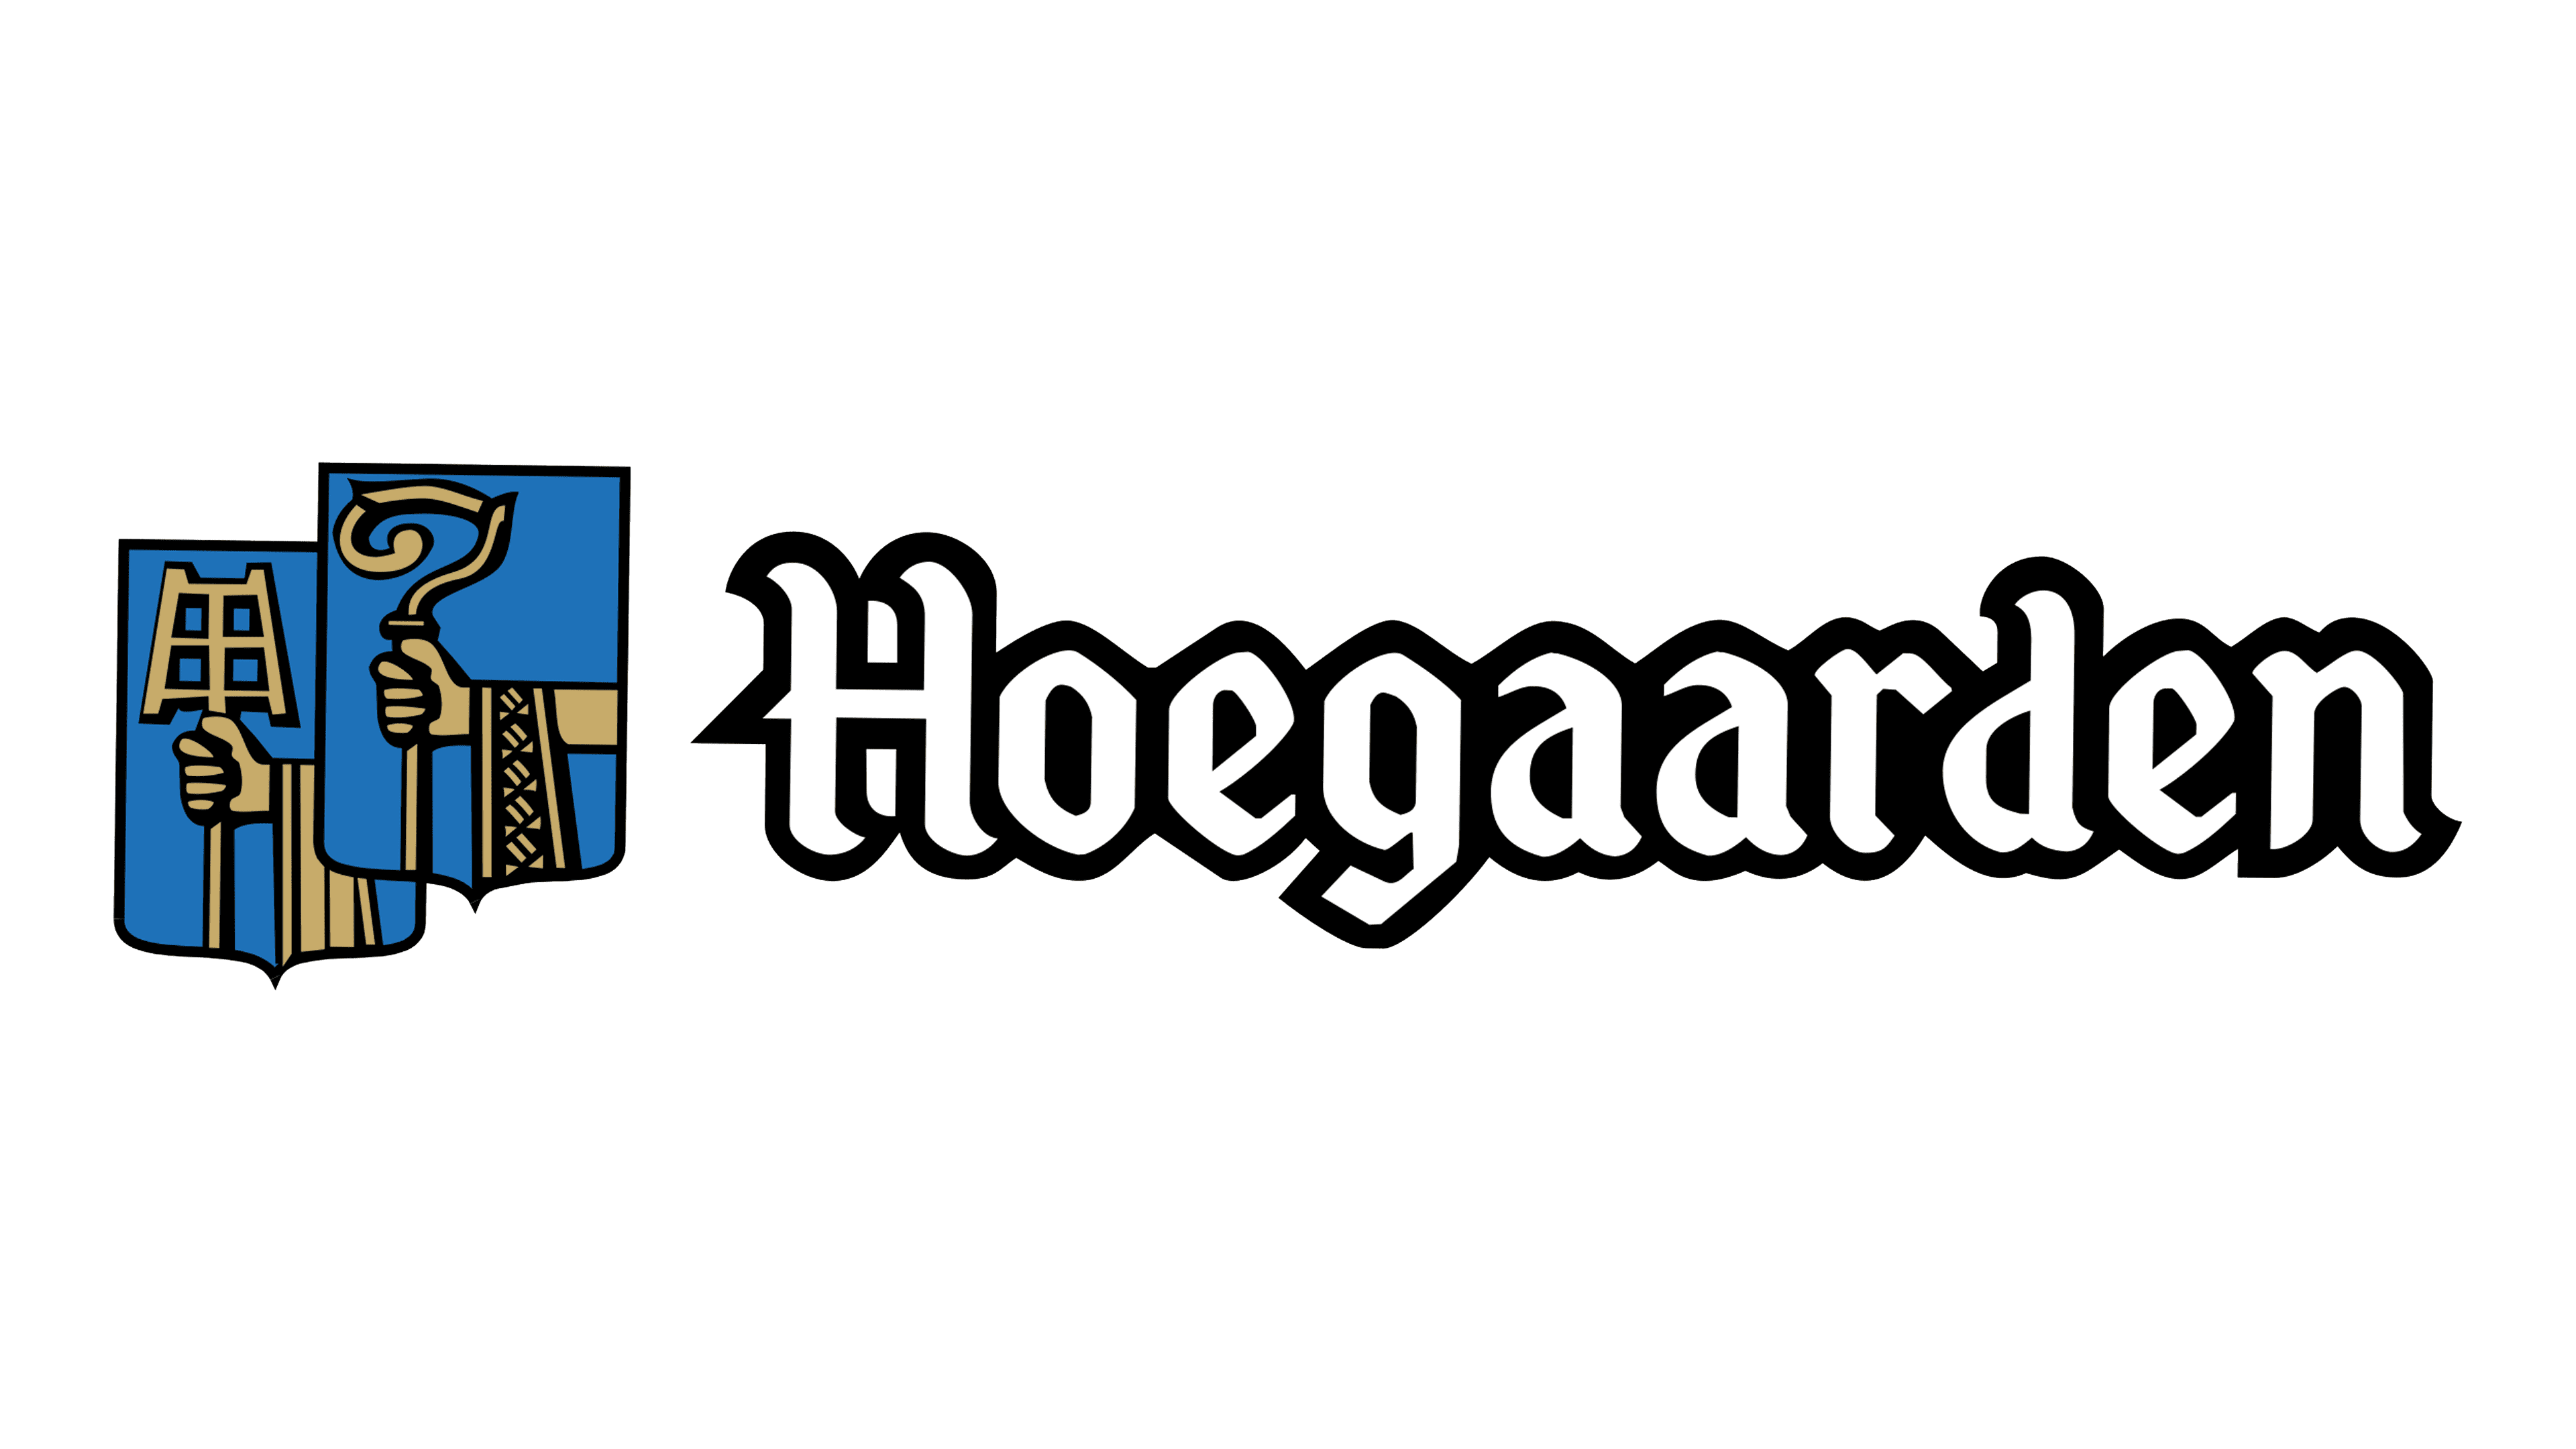 Logotipo de Hoegaarden Logo